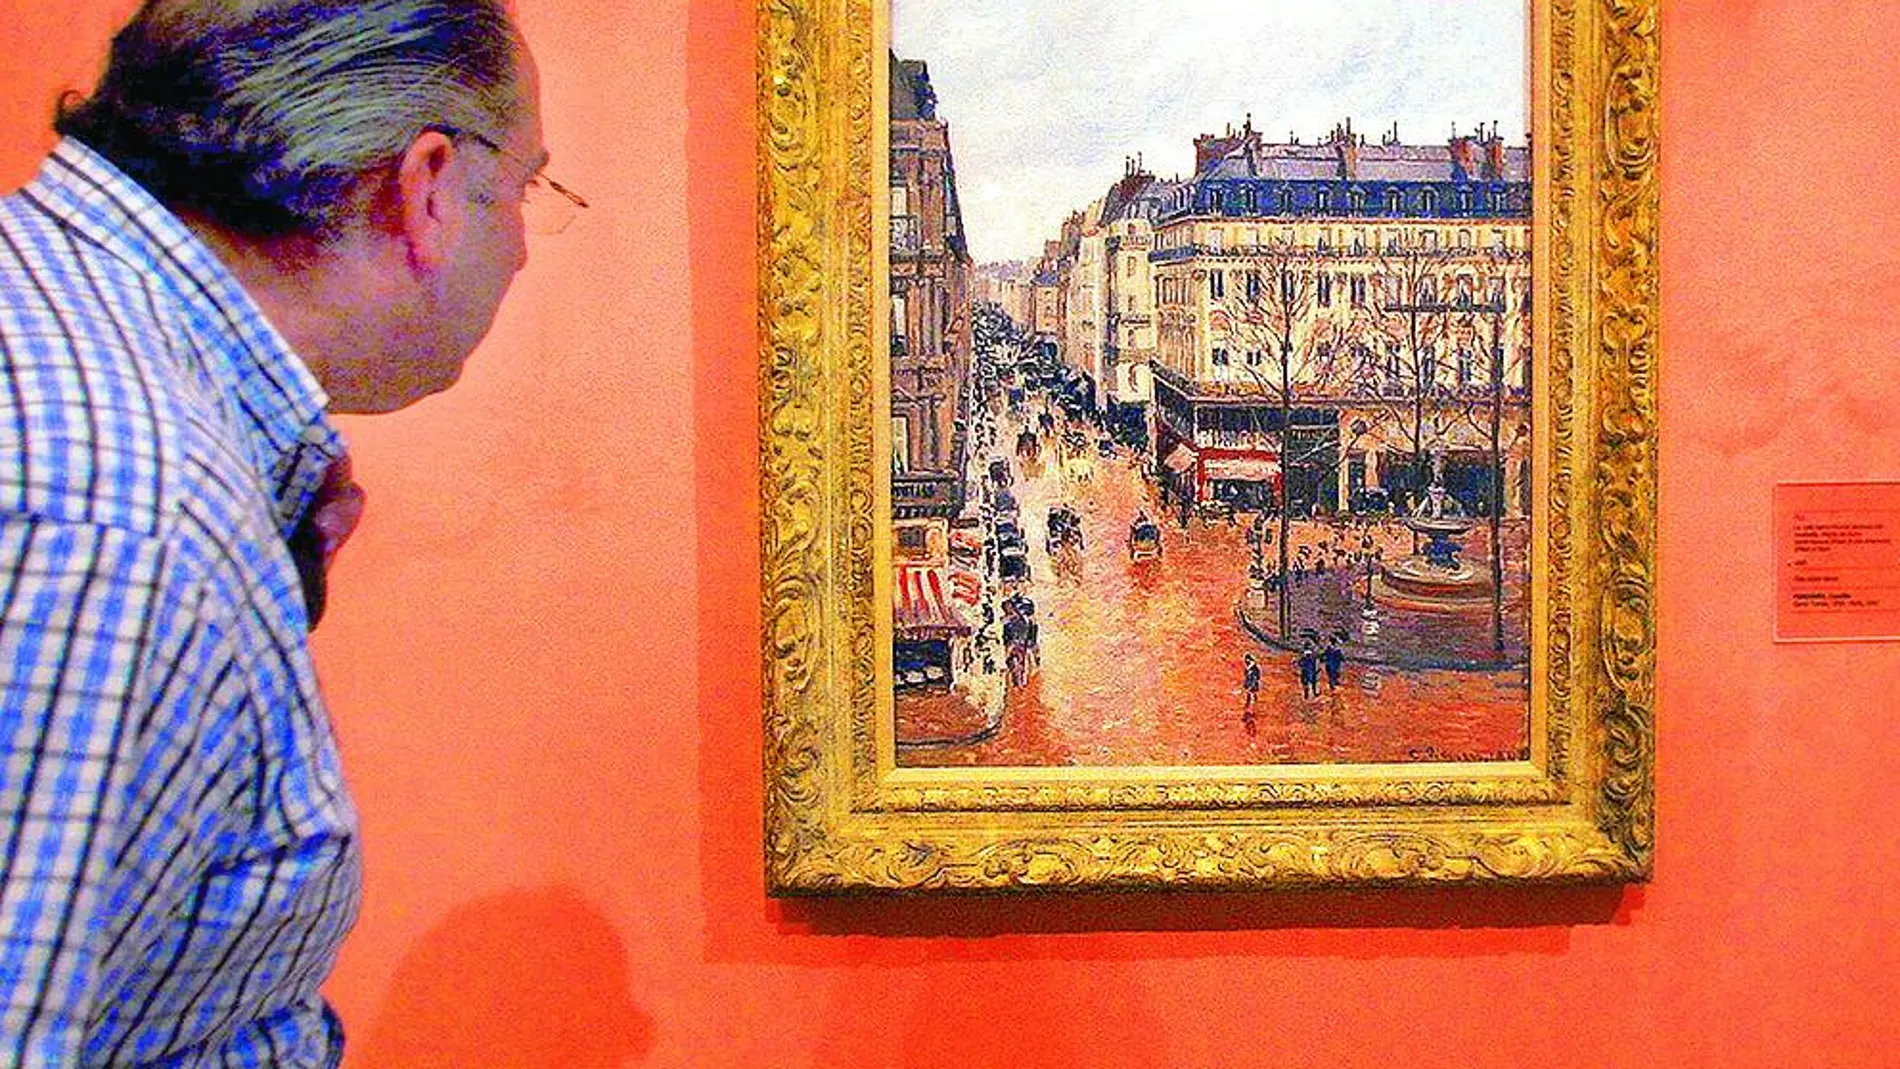 El lienzo de Pissarro representa una céntrica calle de la bulliciosa París